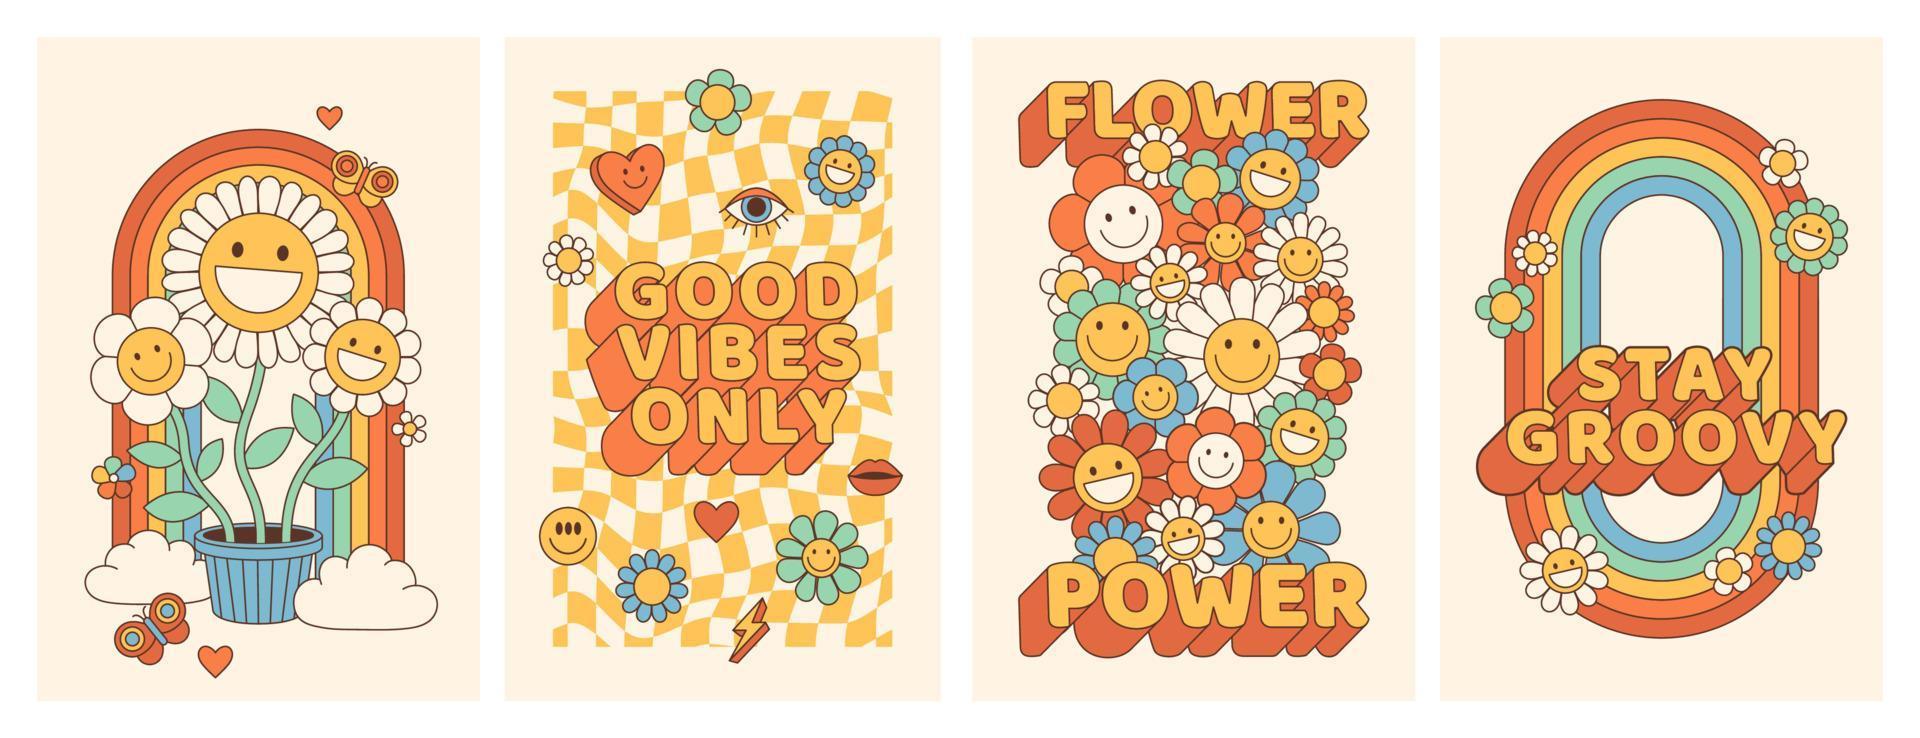 Groovy hippie 70s manifesti con fiore, arcobaleno, amore nel di moda retrò psichedelico cartone animato stile. vettore